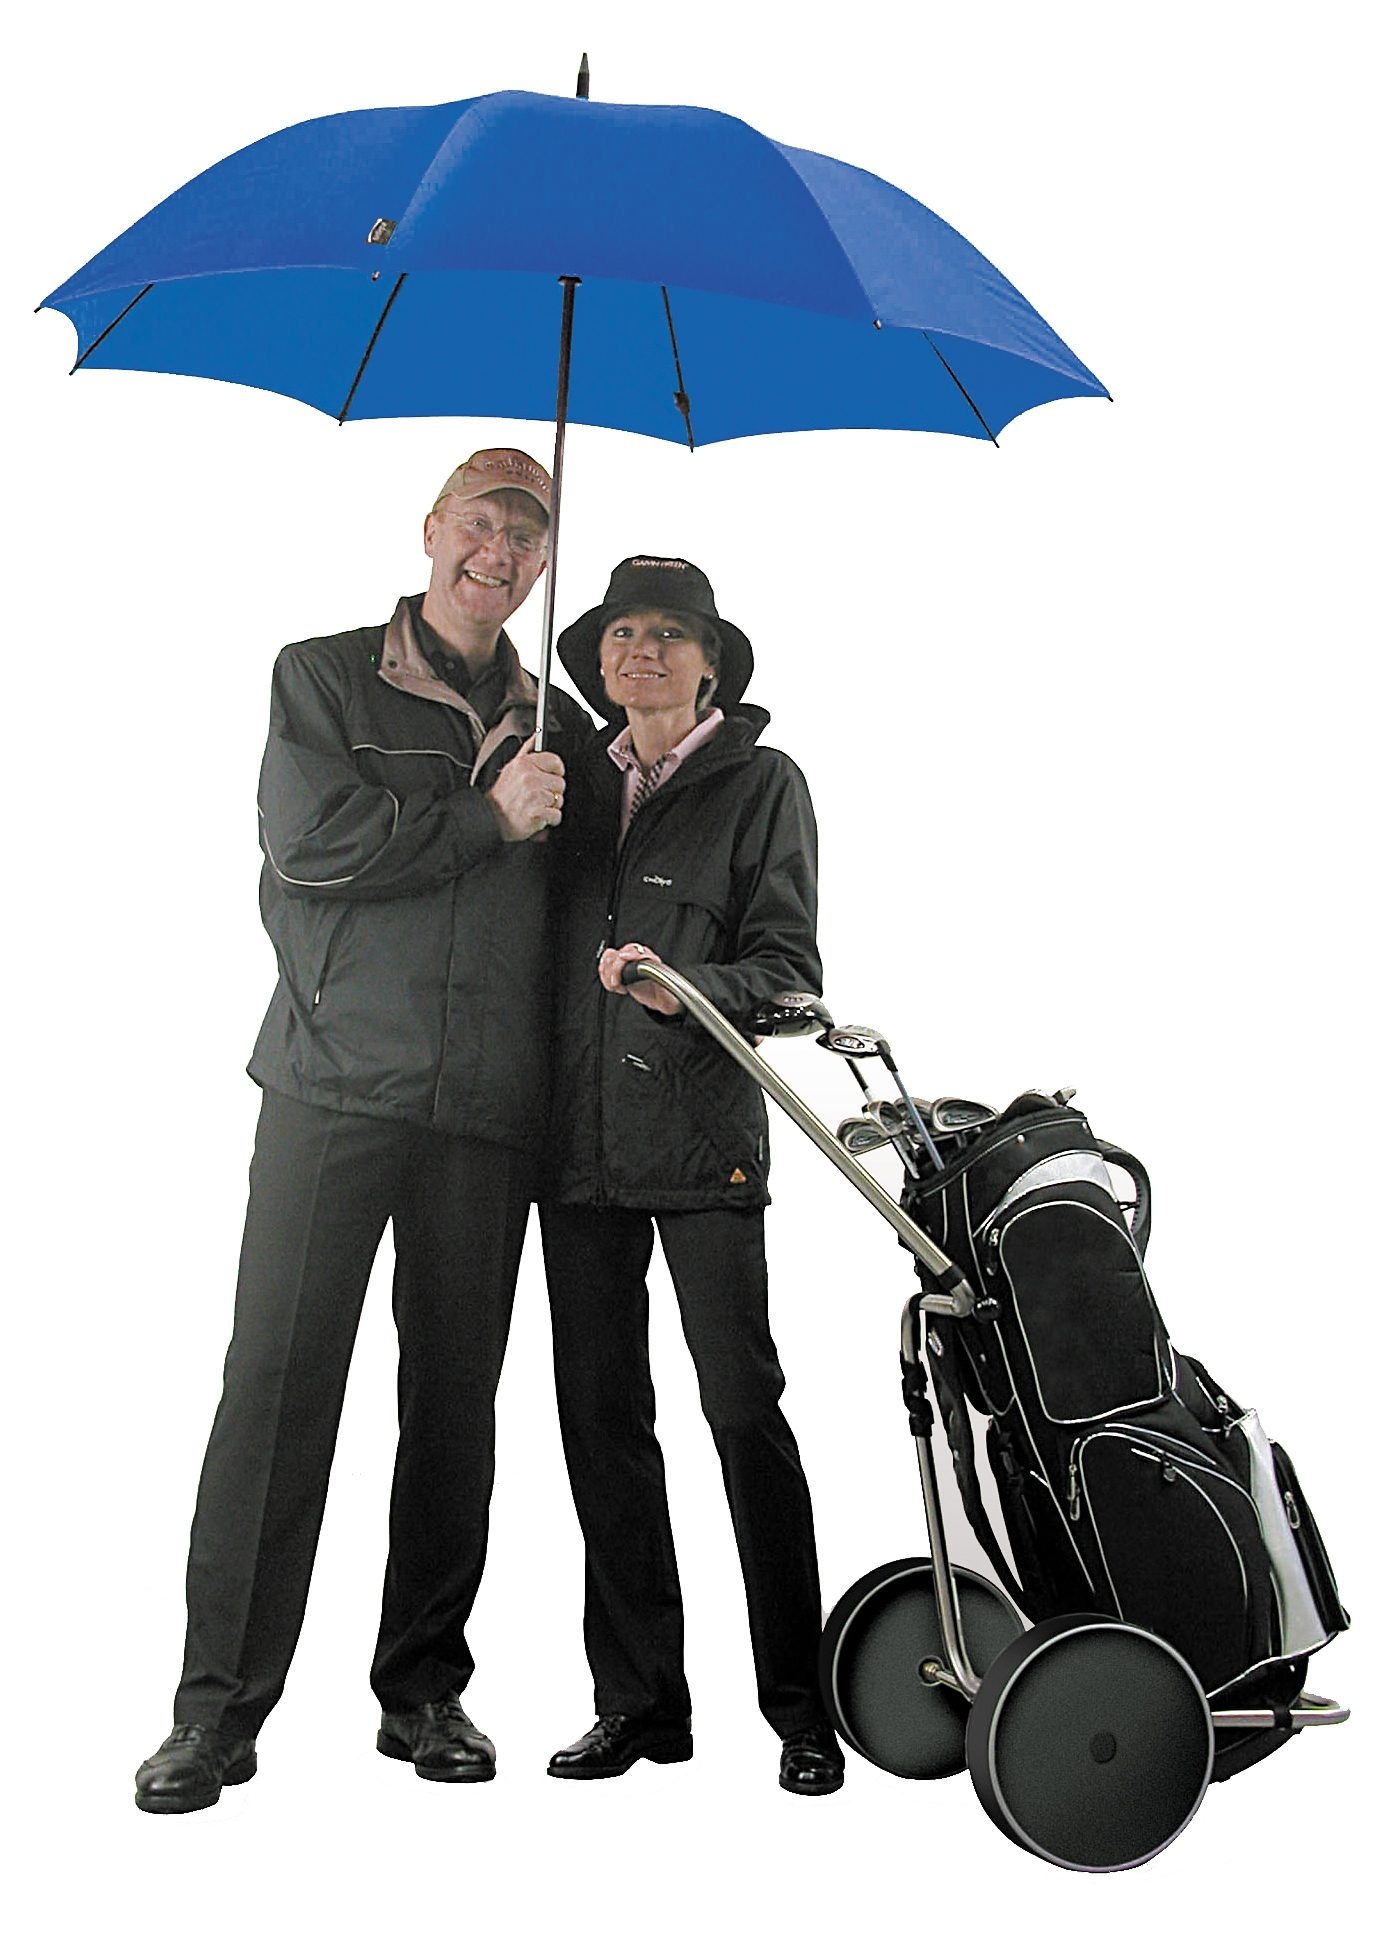 Stockregenschirm kaufen rain« online EuroSCHIRM® »birdiepal®